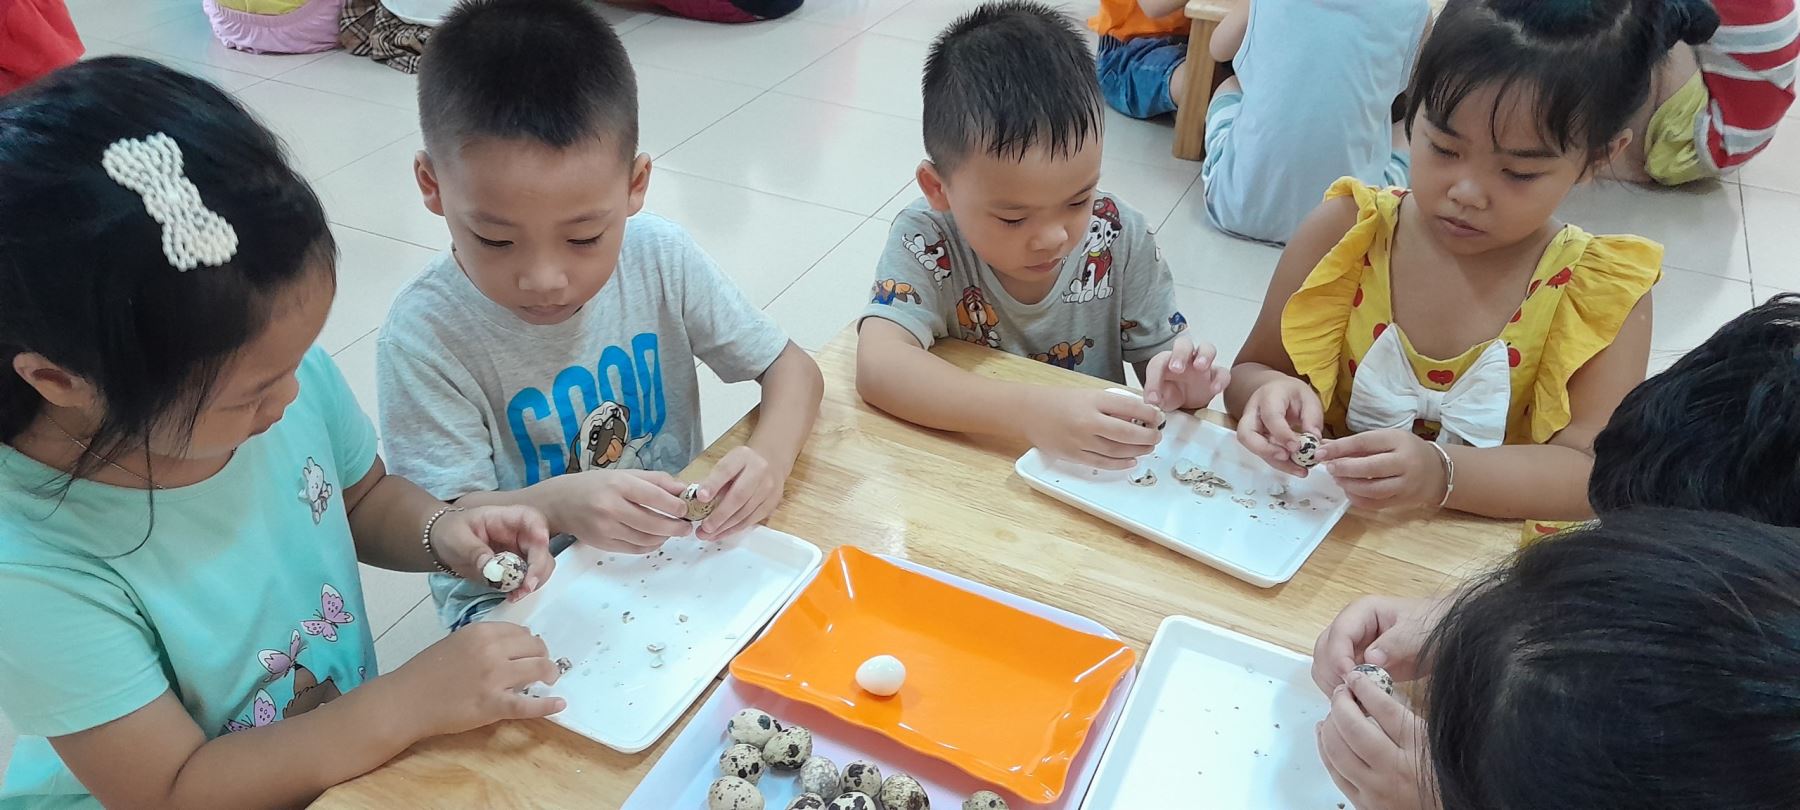 Lớp MGL A1 - Chúng con hôm nay được cô giáo hướng dẫn cách bóc trứng chim cút. Chúng con giúp các bác cấp dưỡng, để các bác chế biến món ăn: Trứng cút kho thịt cho chúng con ăn đấy!